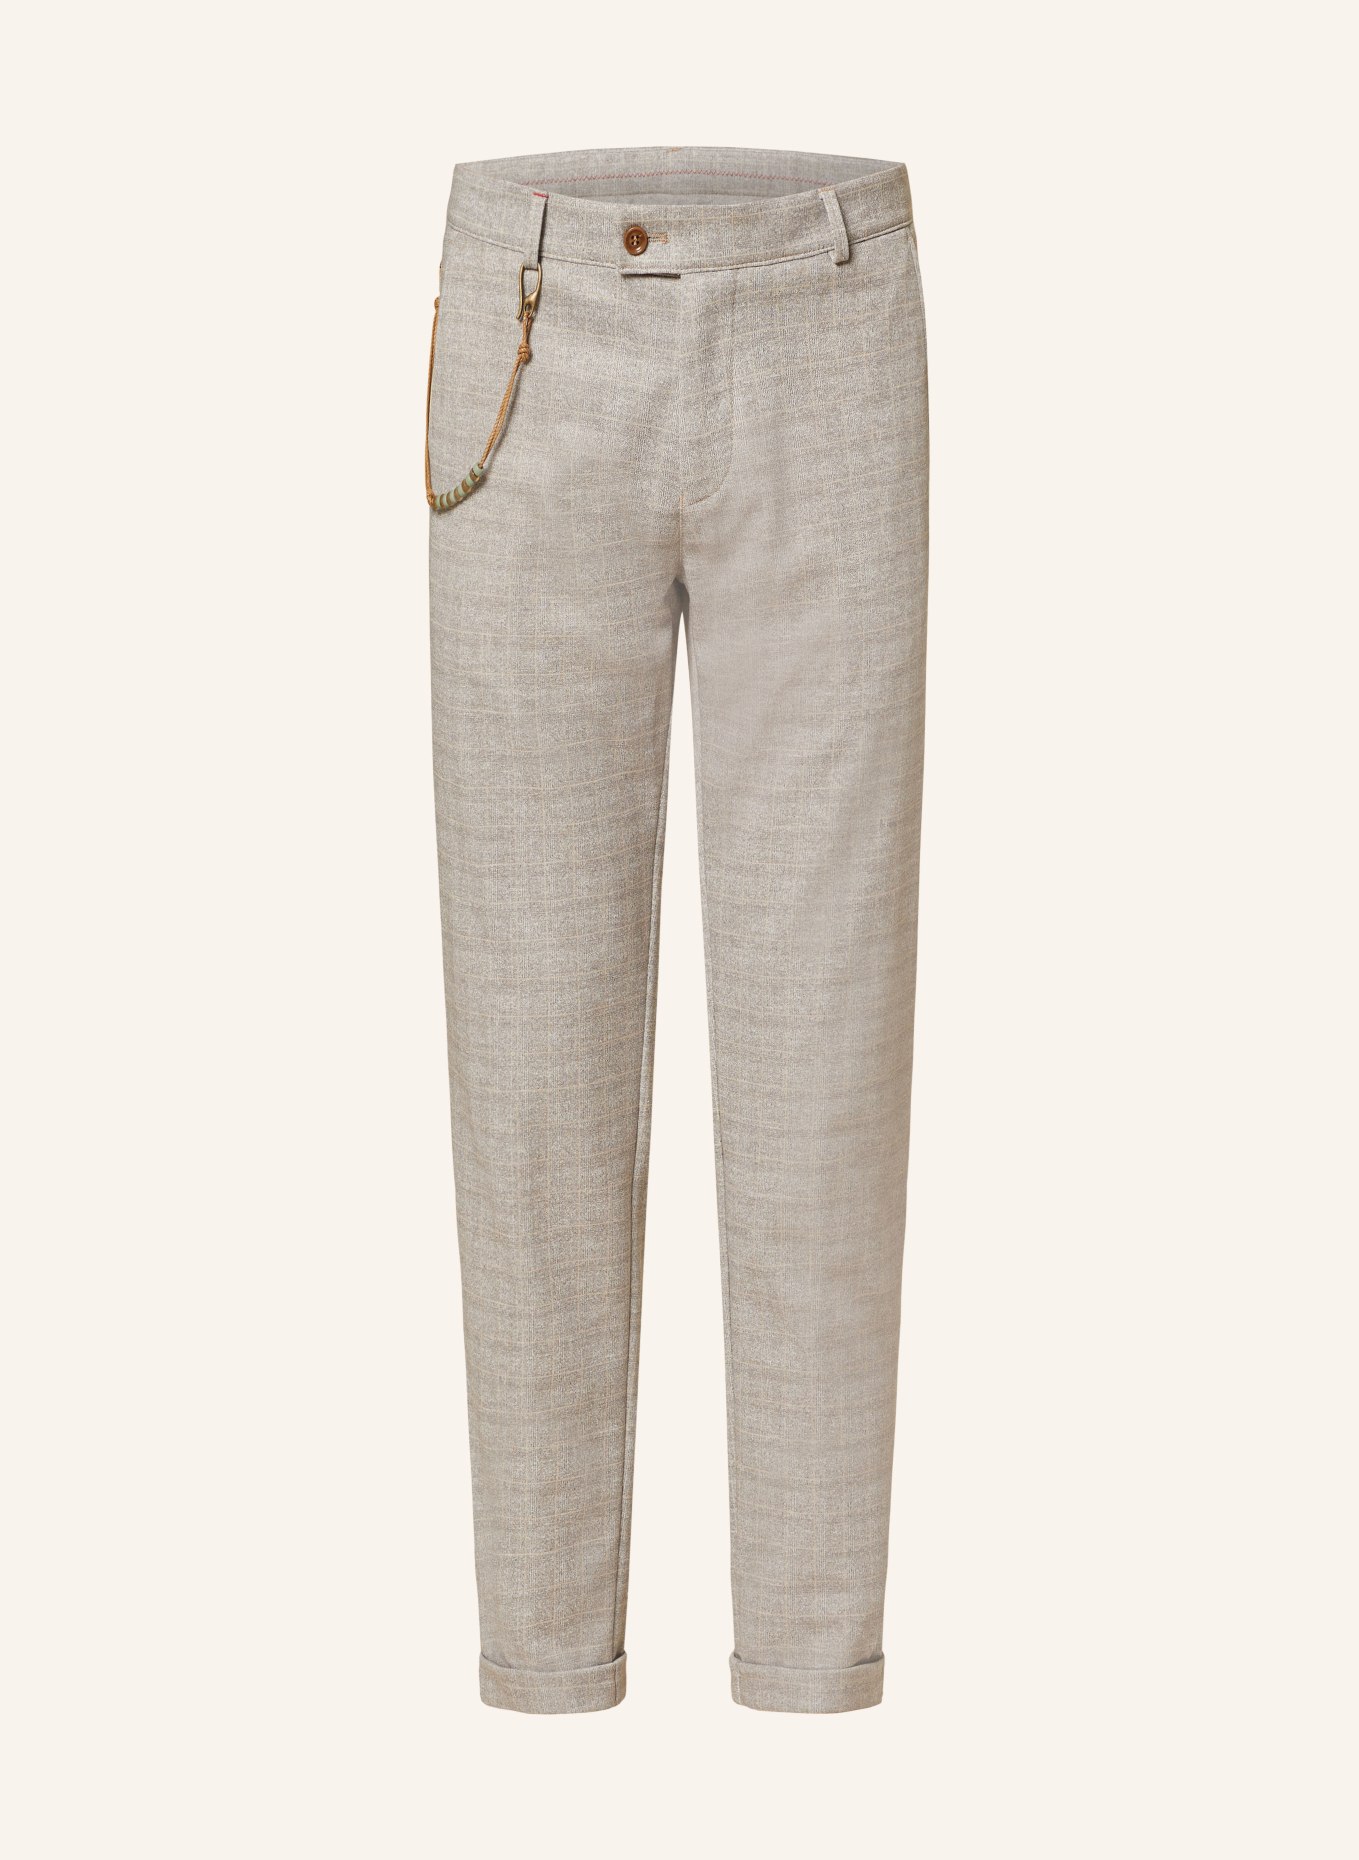 CG - CLUB of GENTS Suit trousers CG CLOW slim fit, Color: 23 dunkelbeige (Image 1)